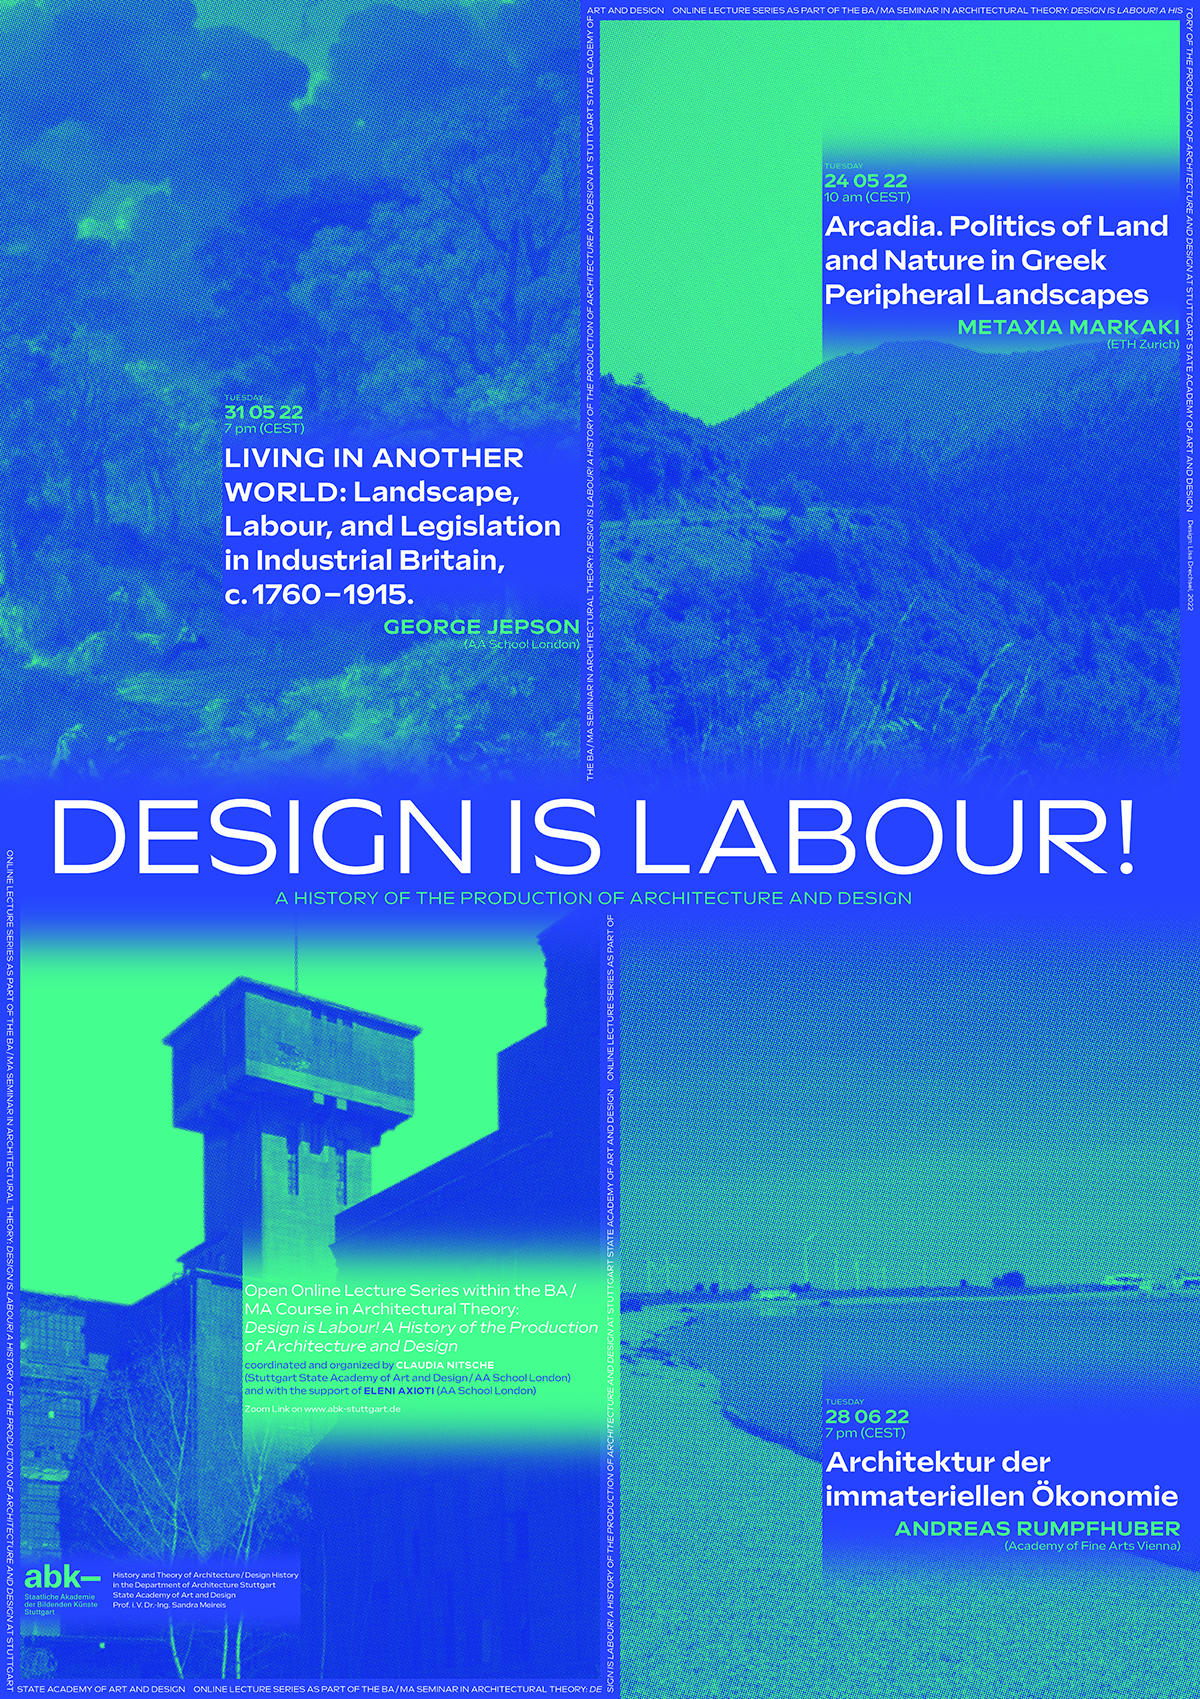 „Design is Labour!“ – Public online lectures